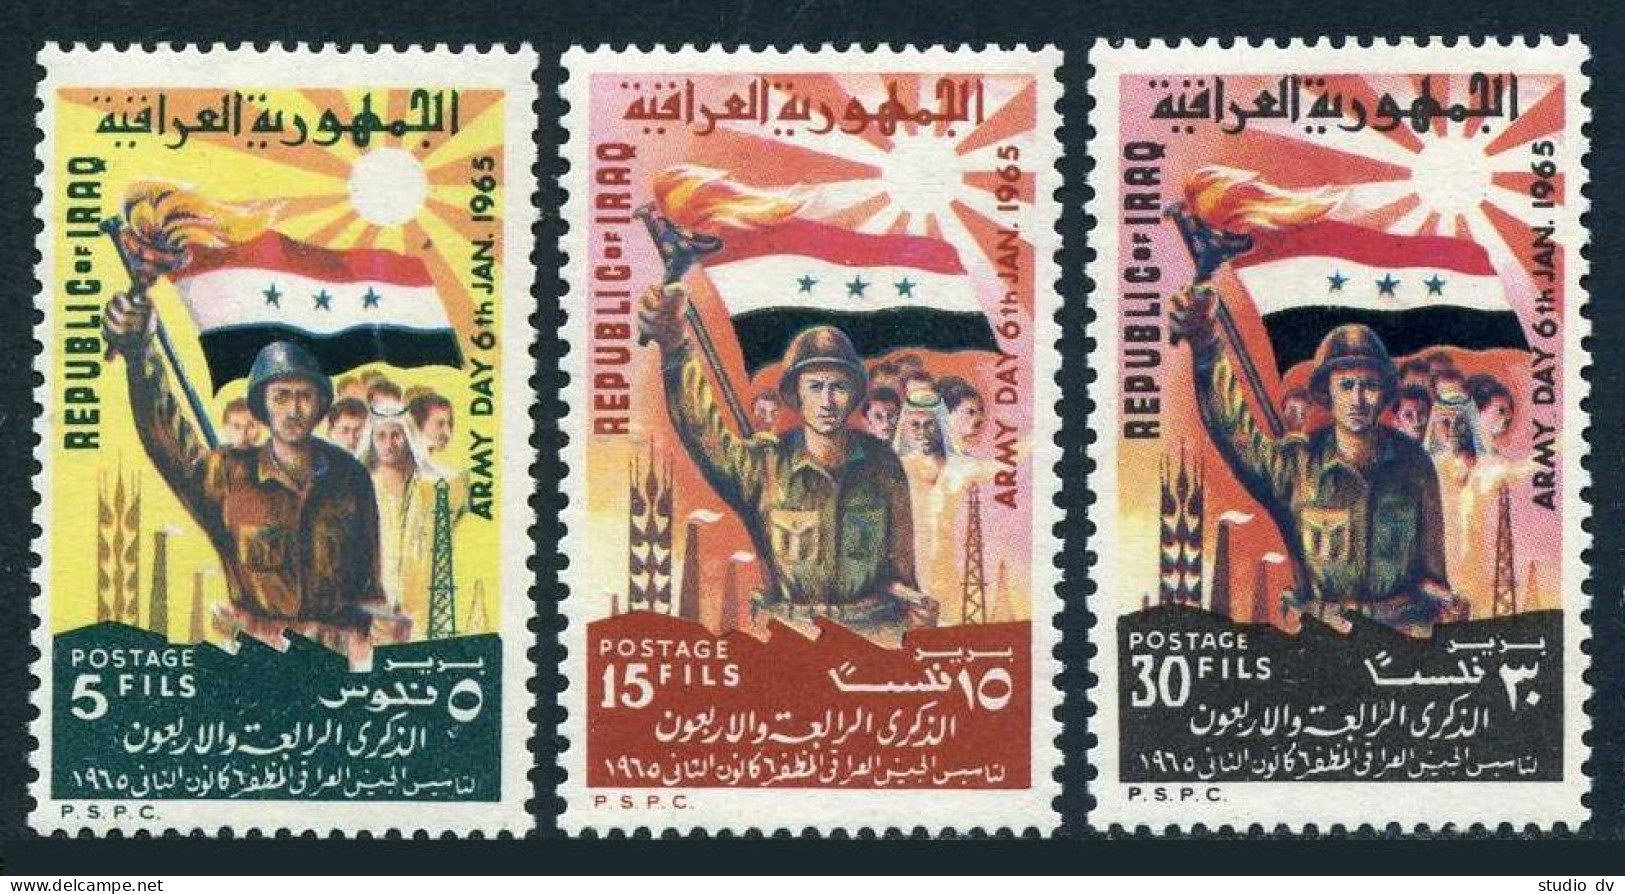 Iraq 361-363, 363a, MNH. Mi 397-399,Bl.6. Army Day-1965. Pres. Abdul Salam Arif. - Iraq